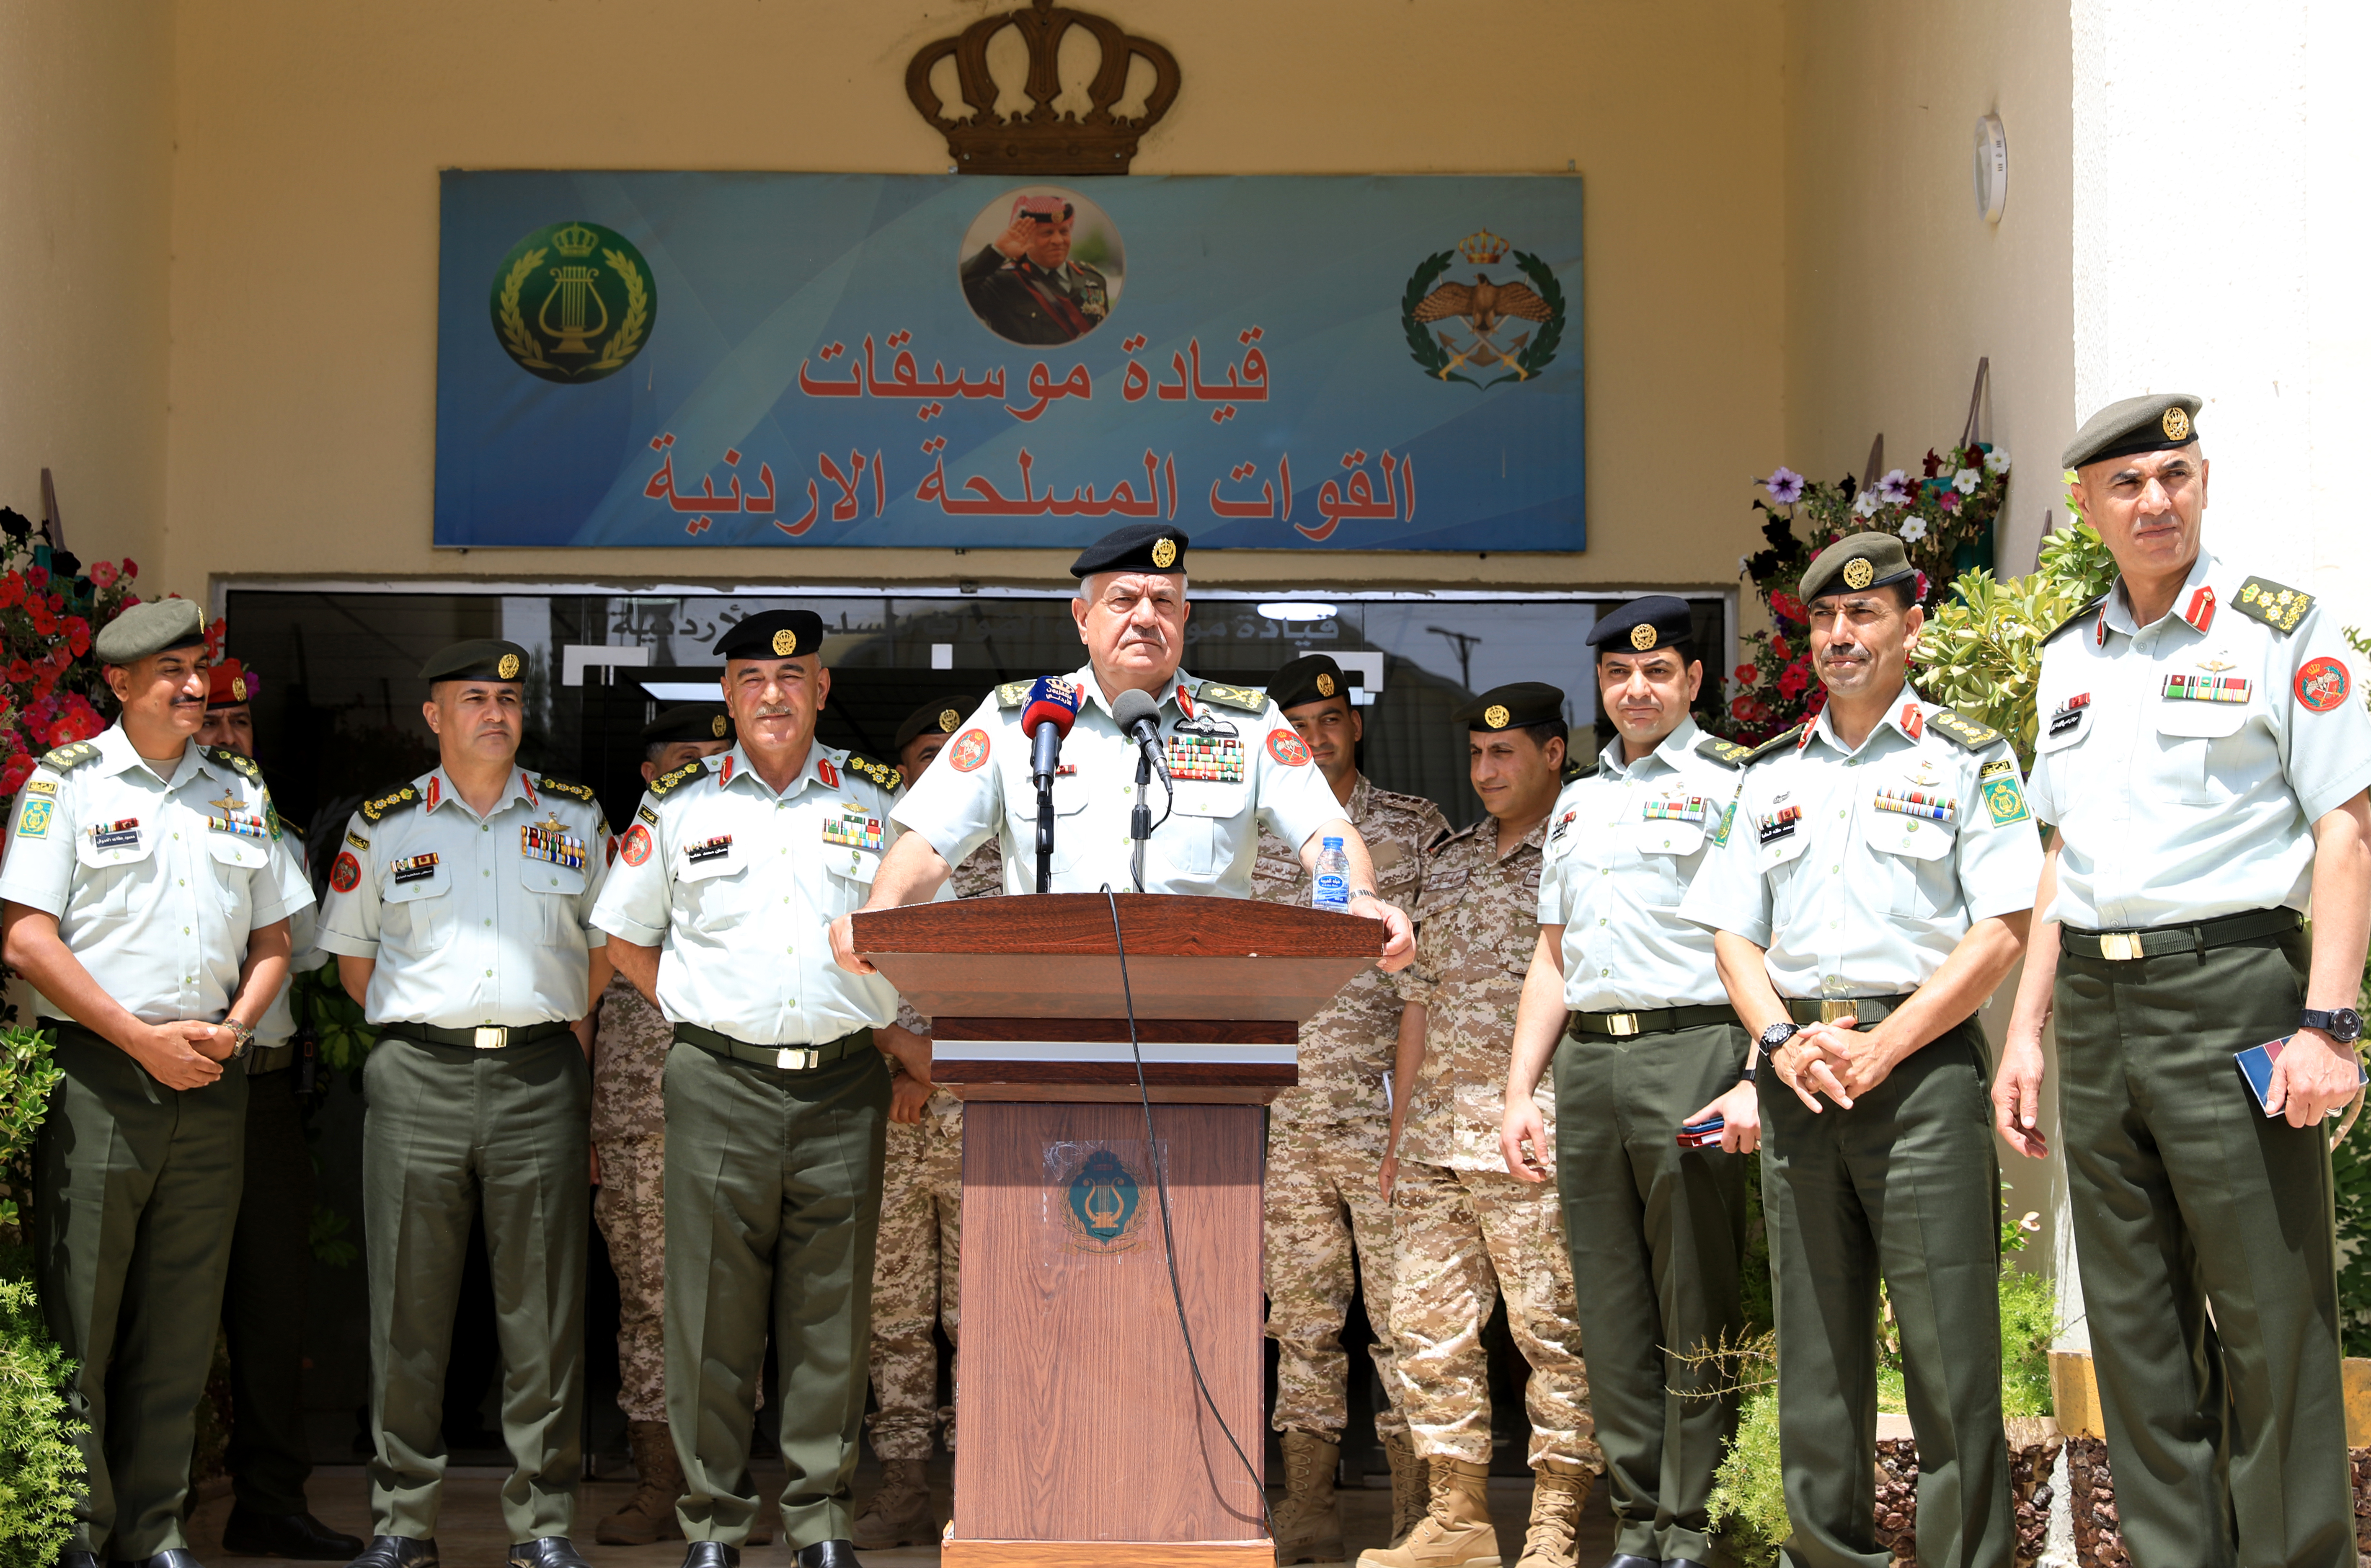 اللواء الركن الحنيطي: موسيقات القوات المسلحة إنجازاتها رافقت الجيش العربي منذ التأسيس